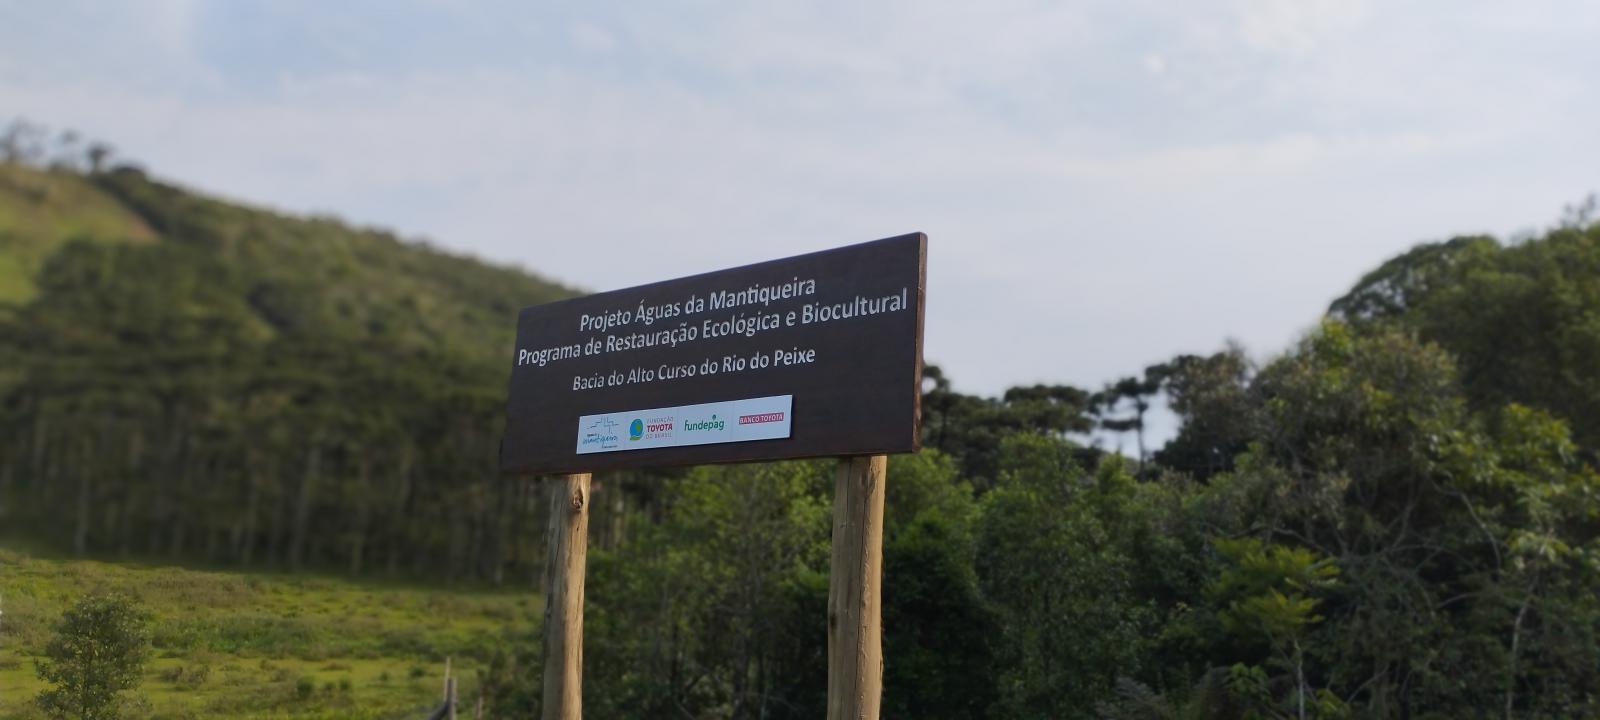 Como projeto na Serra da Mantiqueira vem contribuindo para desenvolvimento sustentável e restauração ecológica de áreas nativas